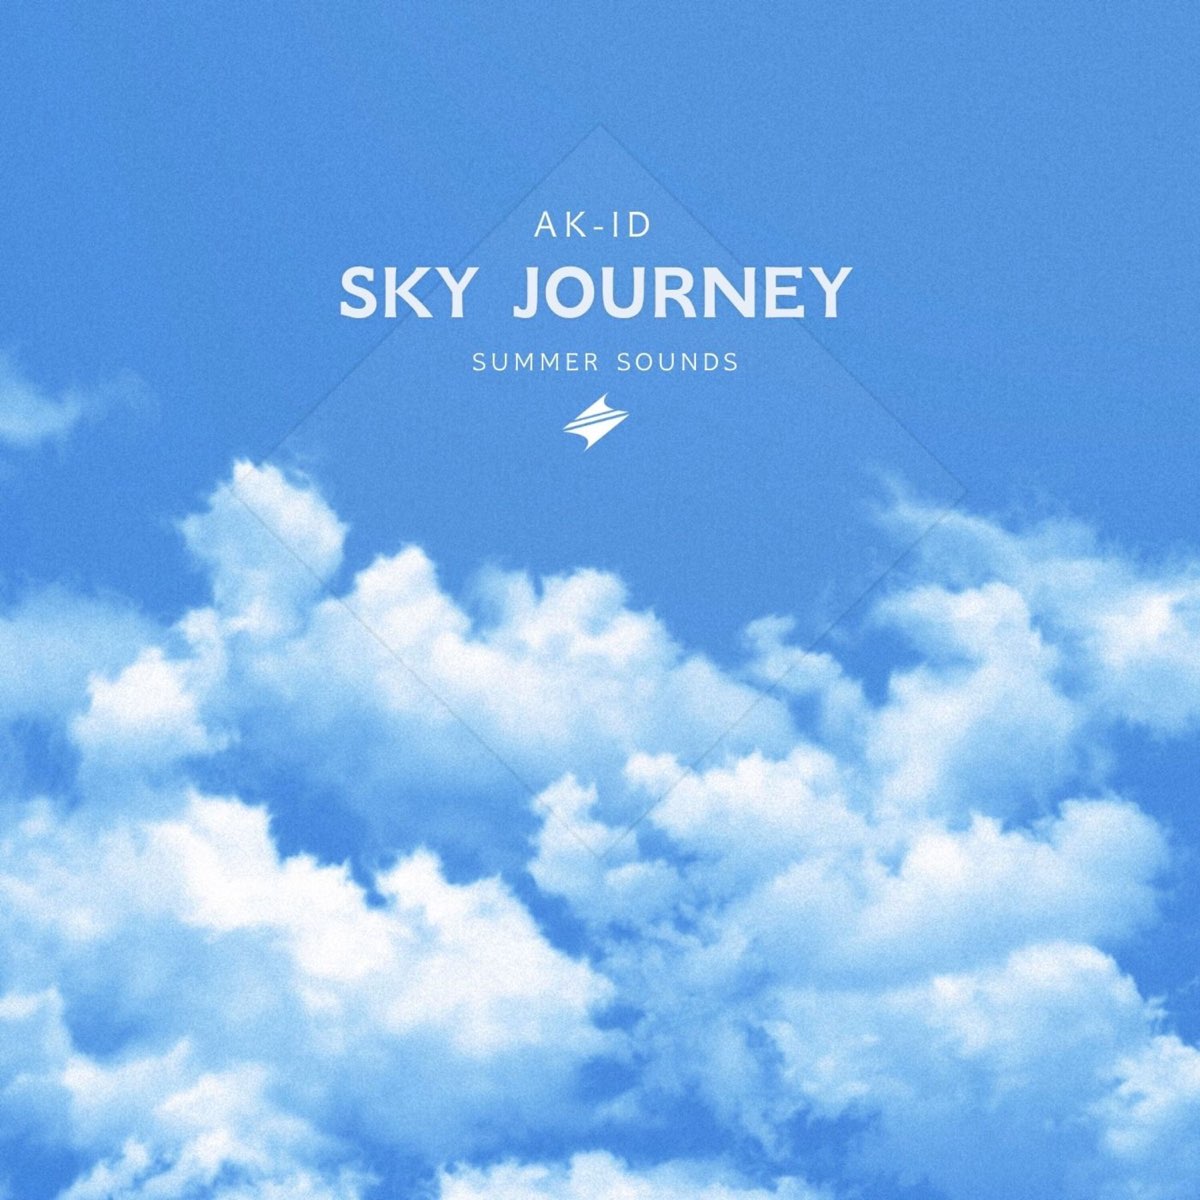 Sky journey. Джорни и Скай. Journey and Sky. Музыка неба.